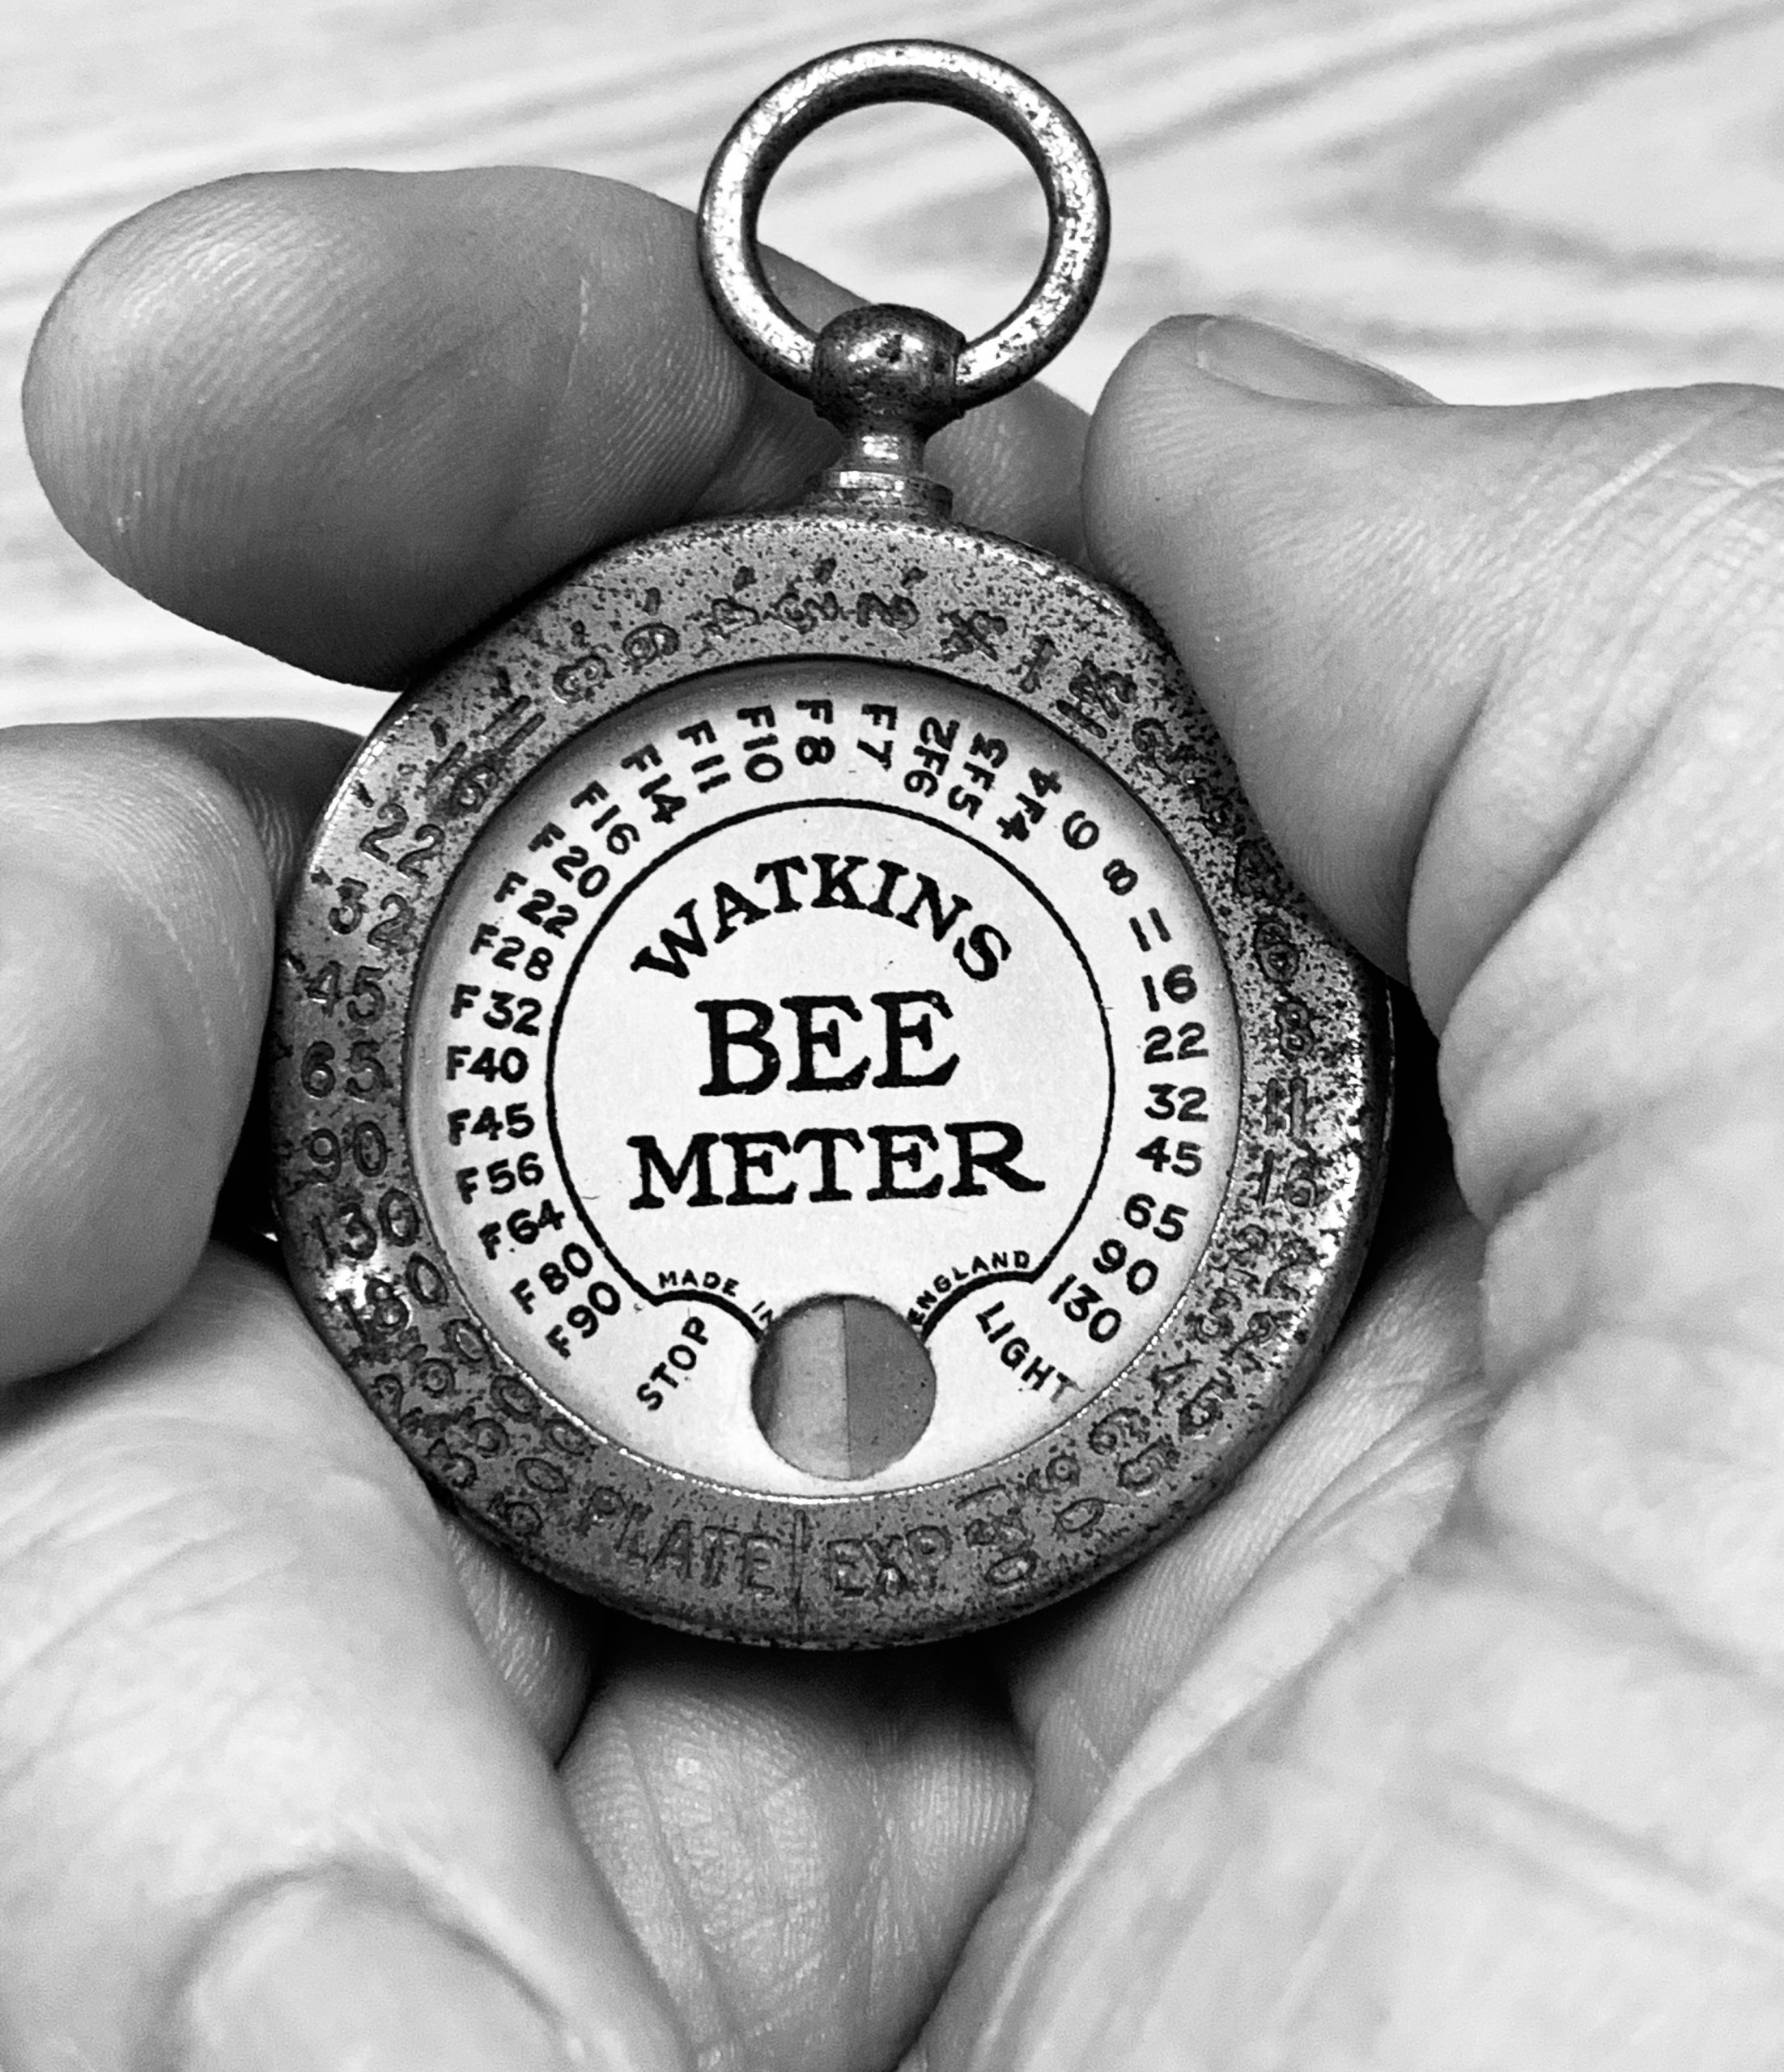 Watkins Bee Exposure Meter